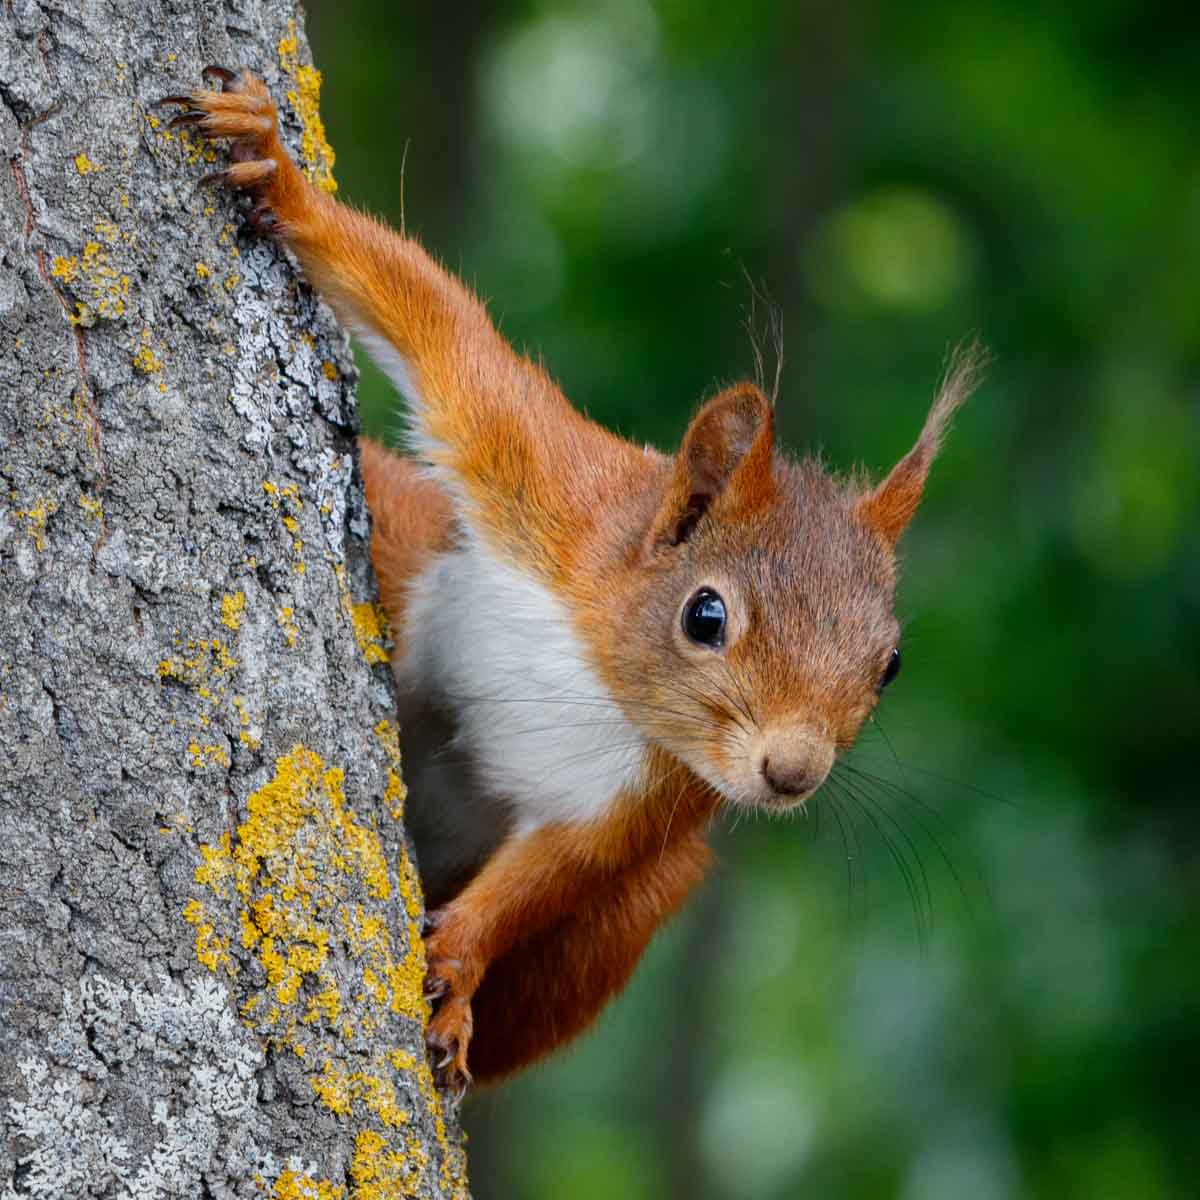 Squirrel pest control services